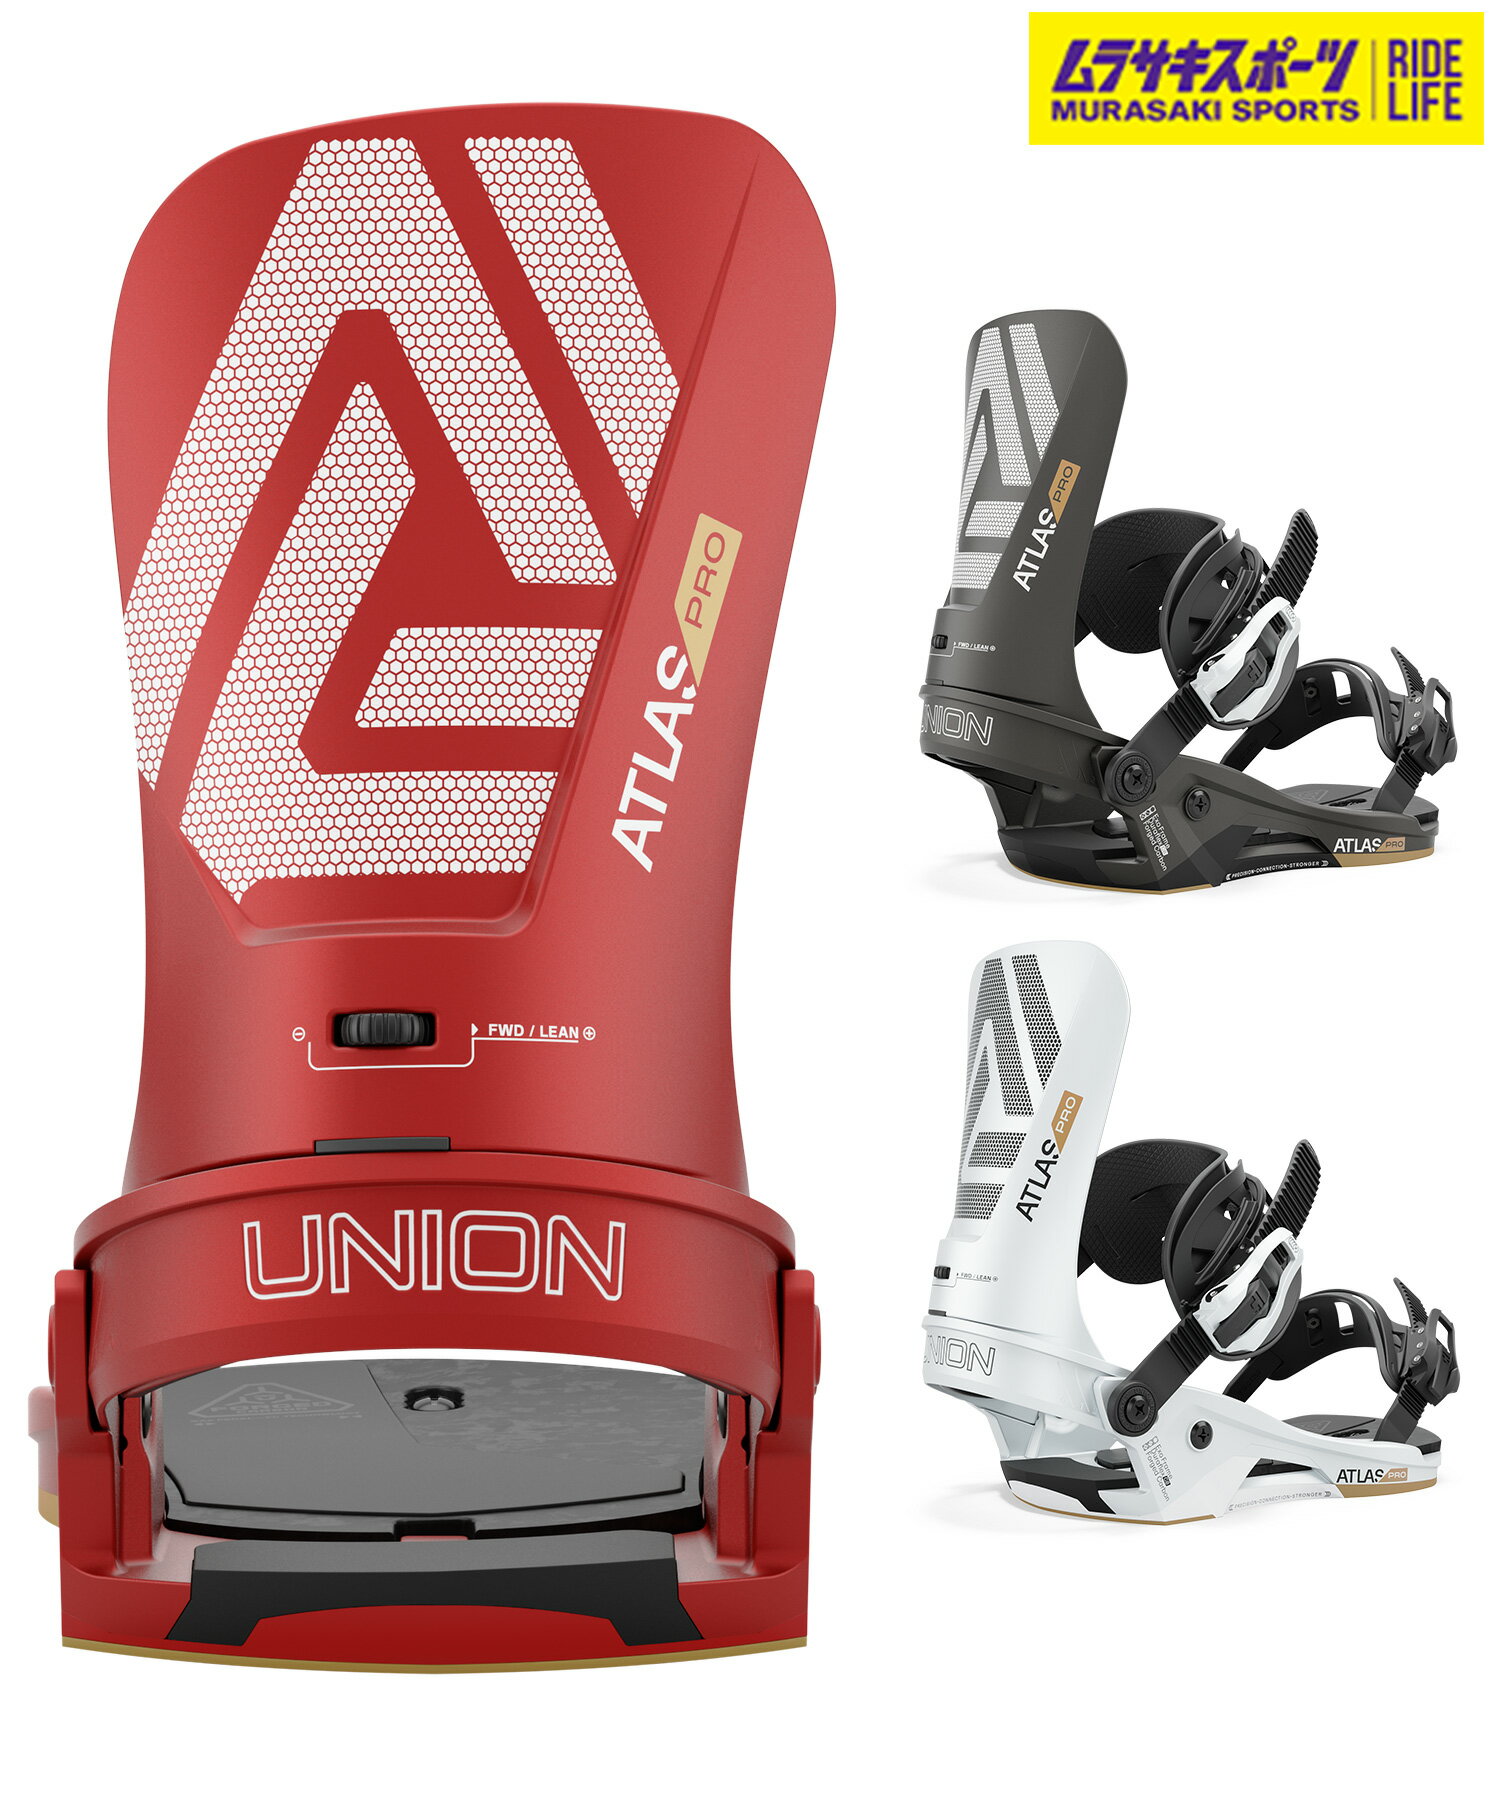 早期購入 UNION ユニオン スノーボード バインディング ビンディング メンズ ATLAS PRO ムラサキスポーツ 24-25モデル LL A19